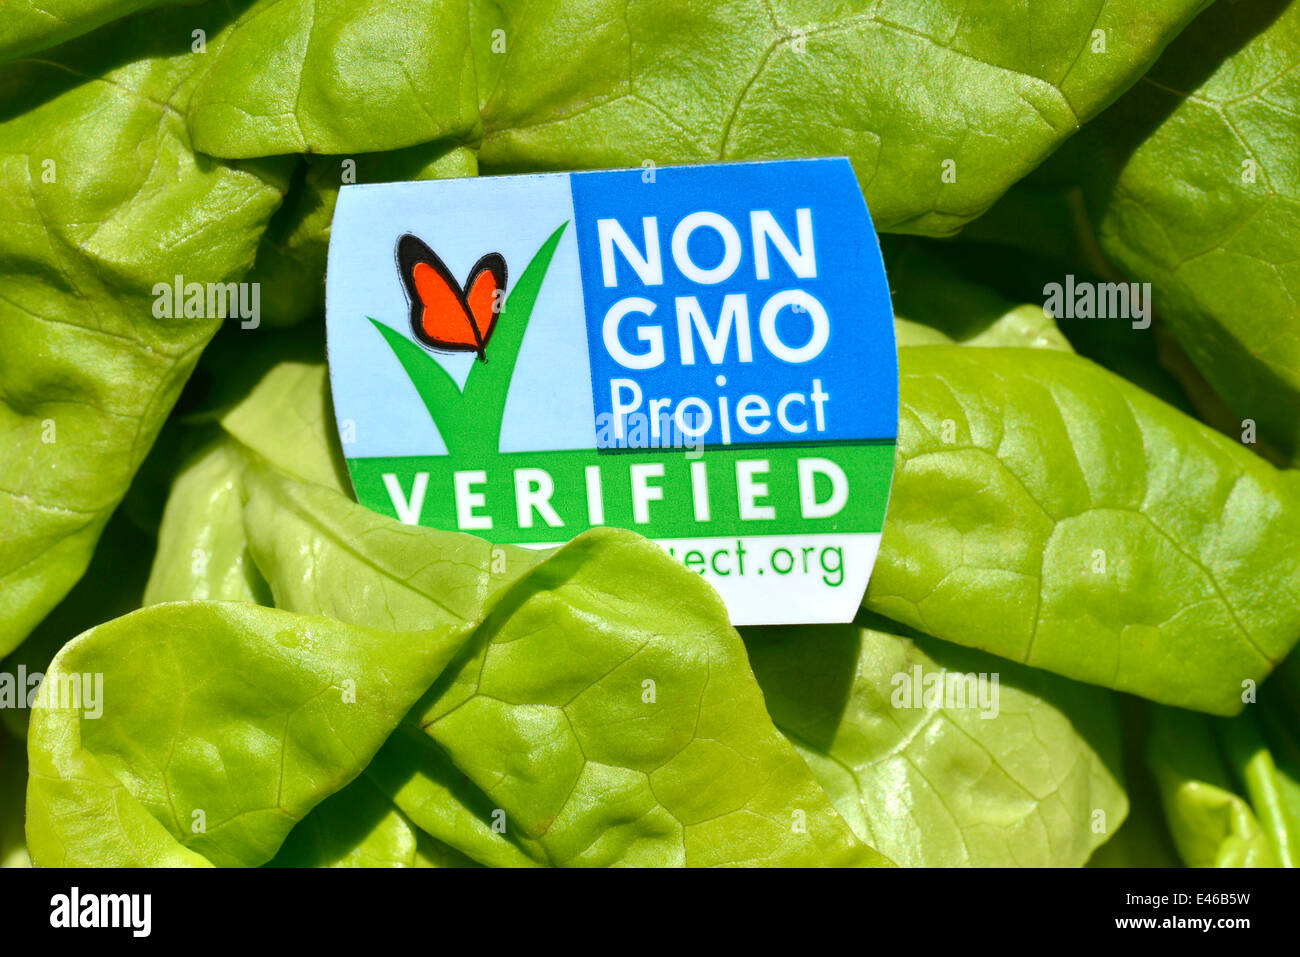 Una cabeza de lechuga mantequilla con una etiqueta no OMG, que comprueba que no contienen organismos modificados genéticamente. Foto de stock